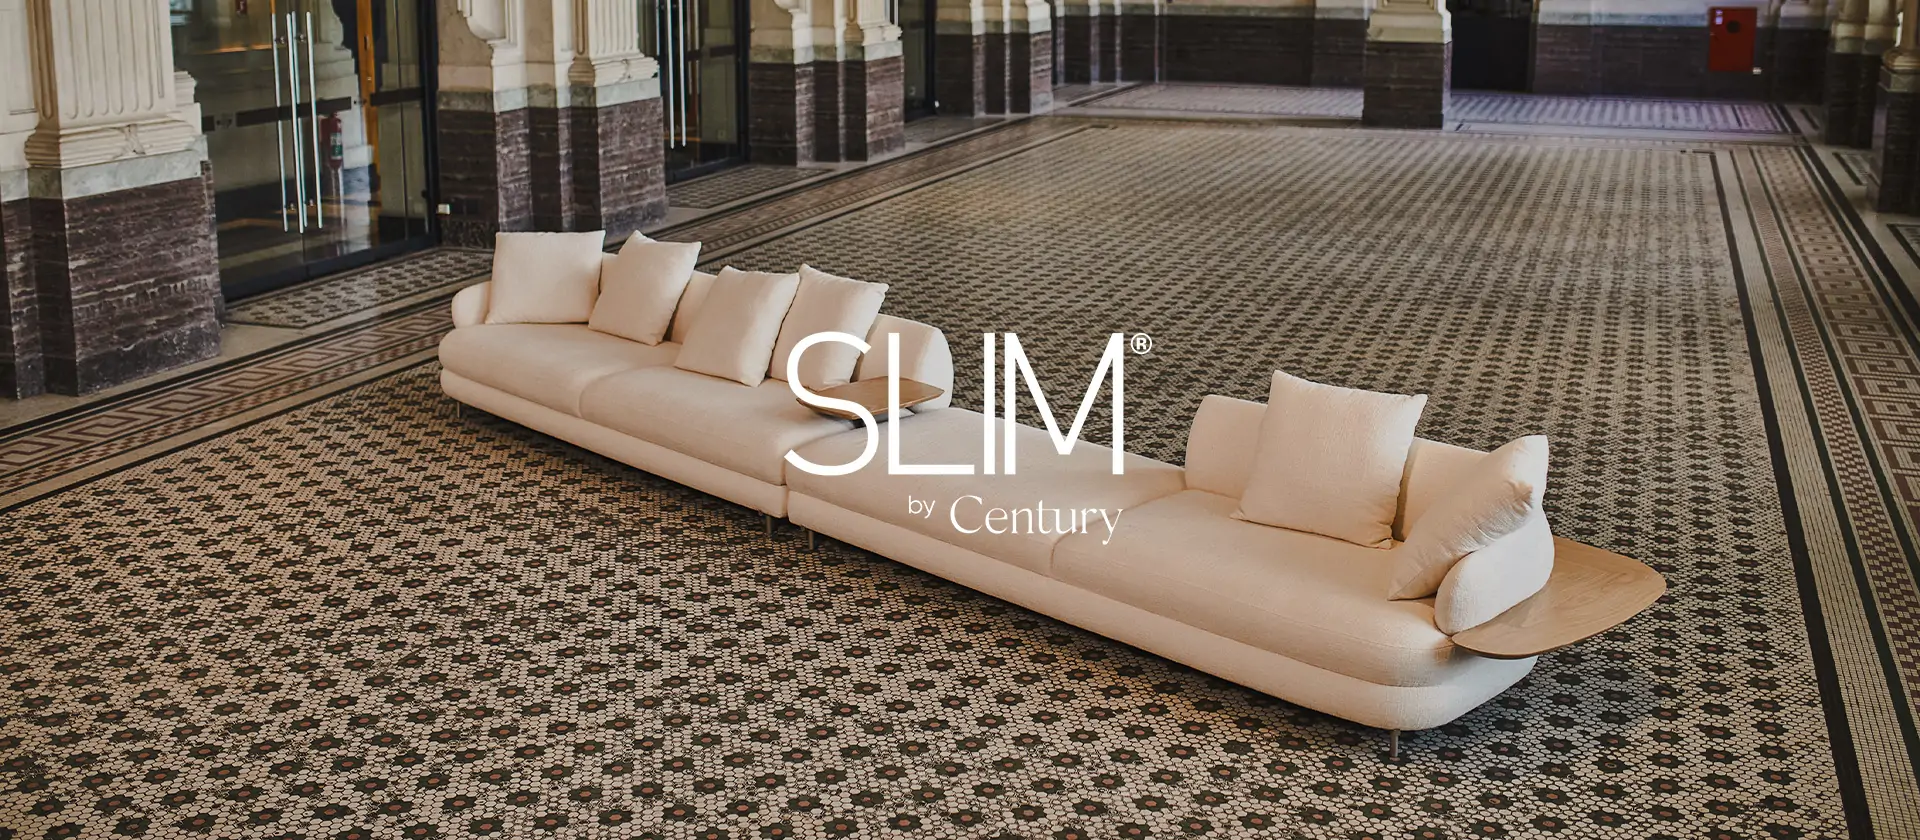 Tecnologia de conforto: conheça os sofás Slim by Century